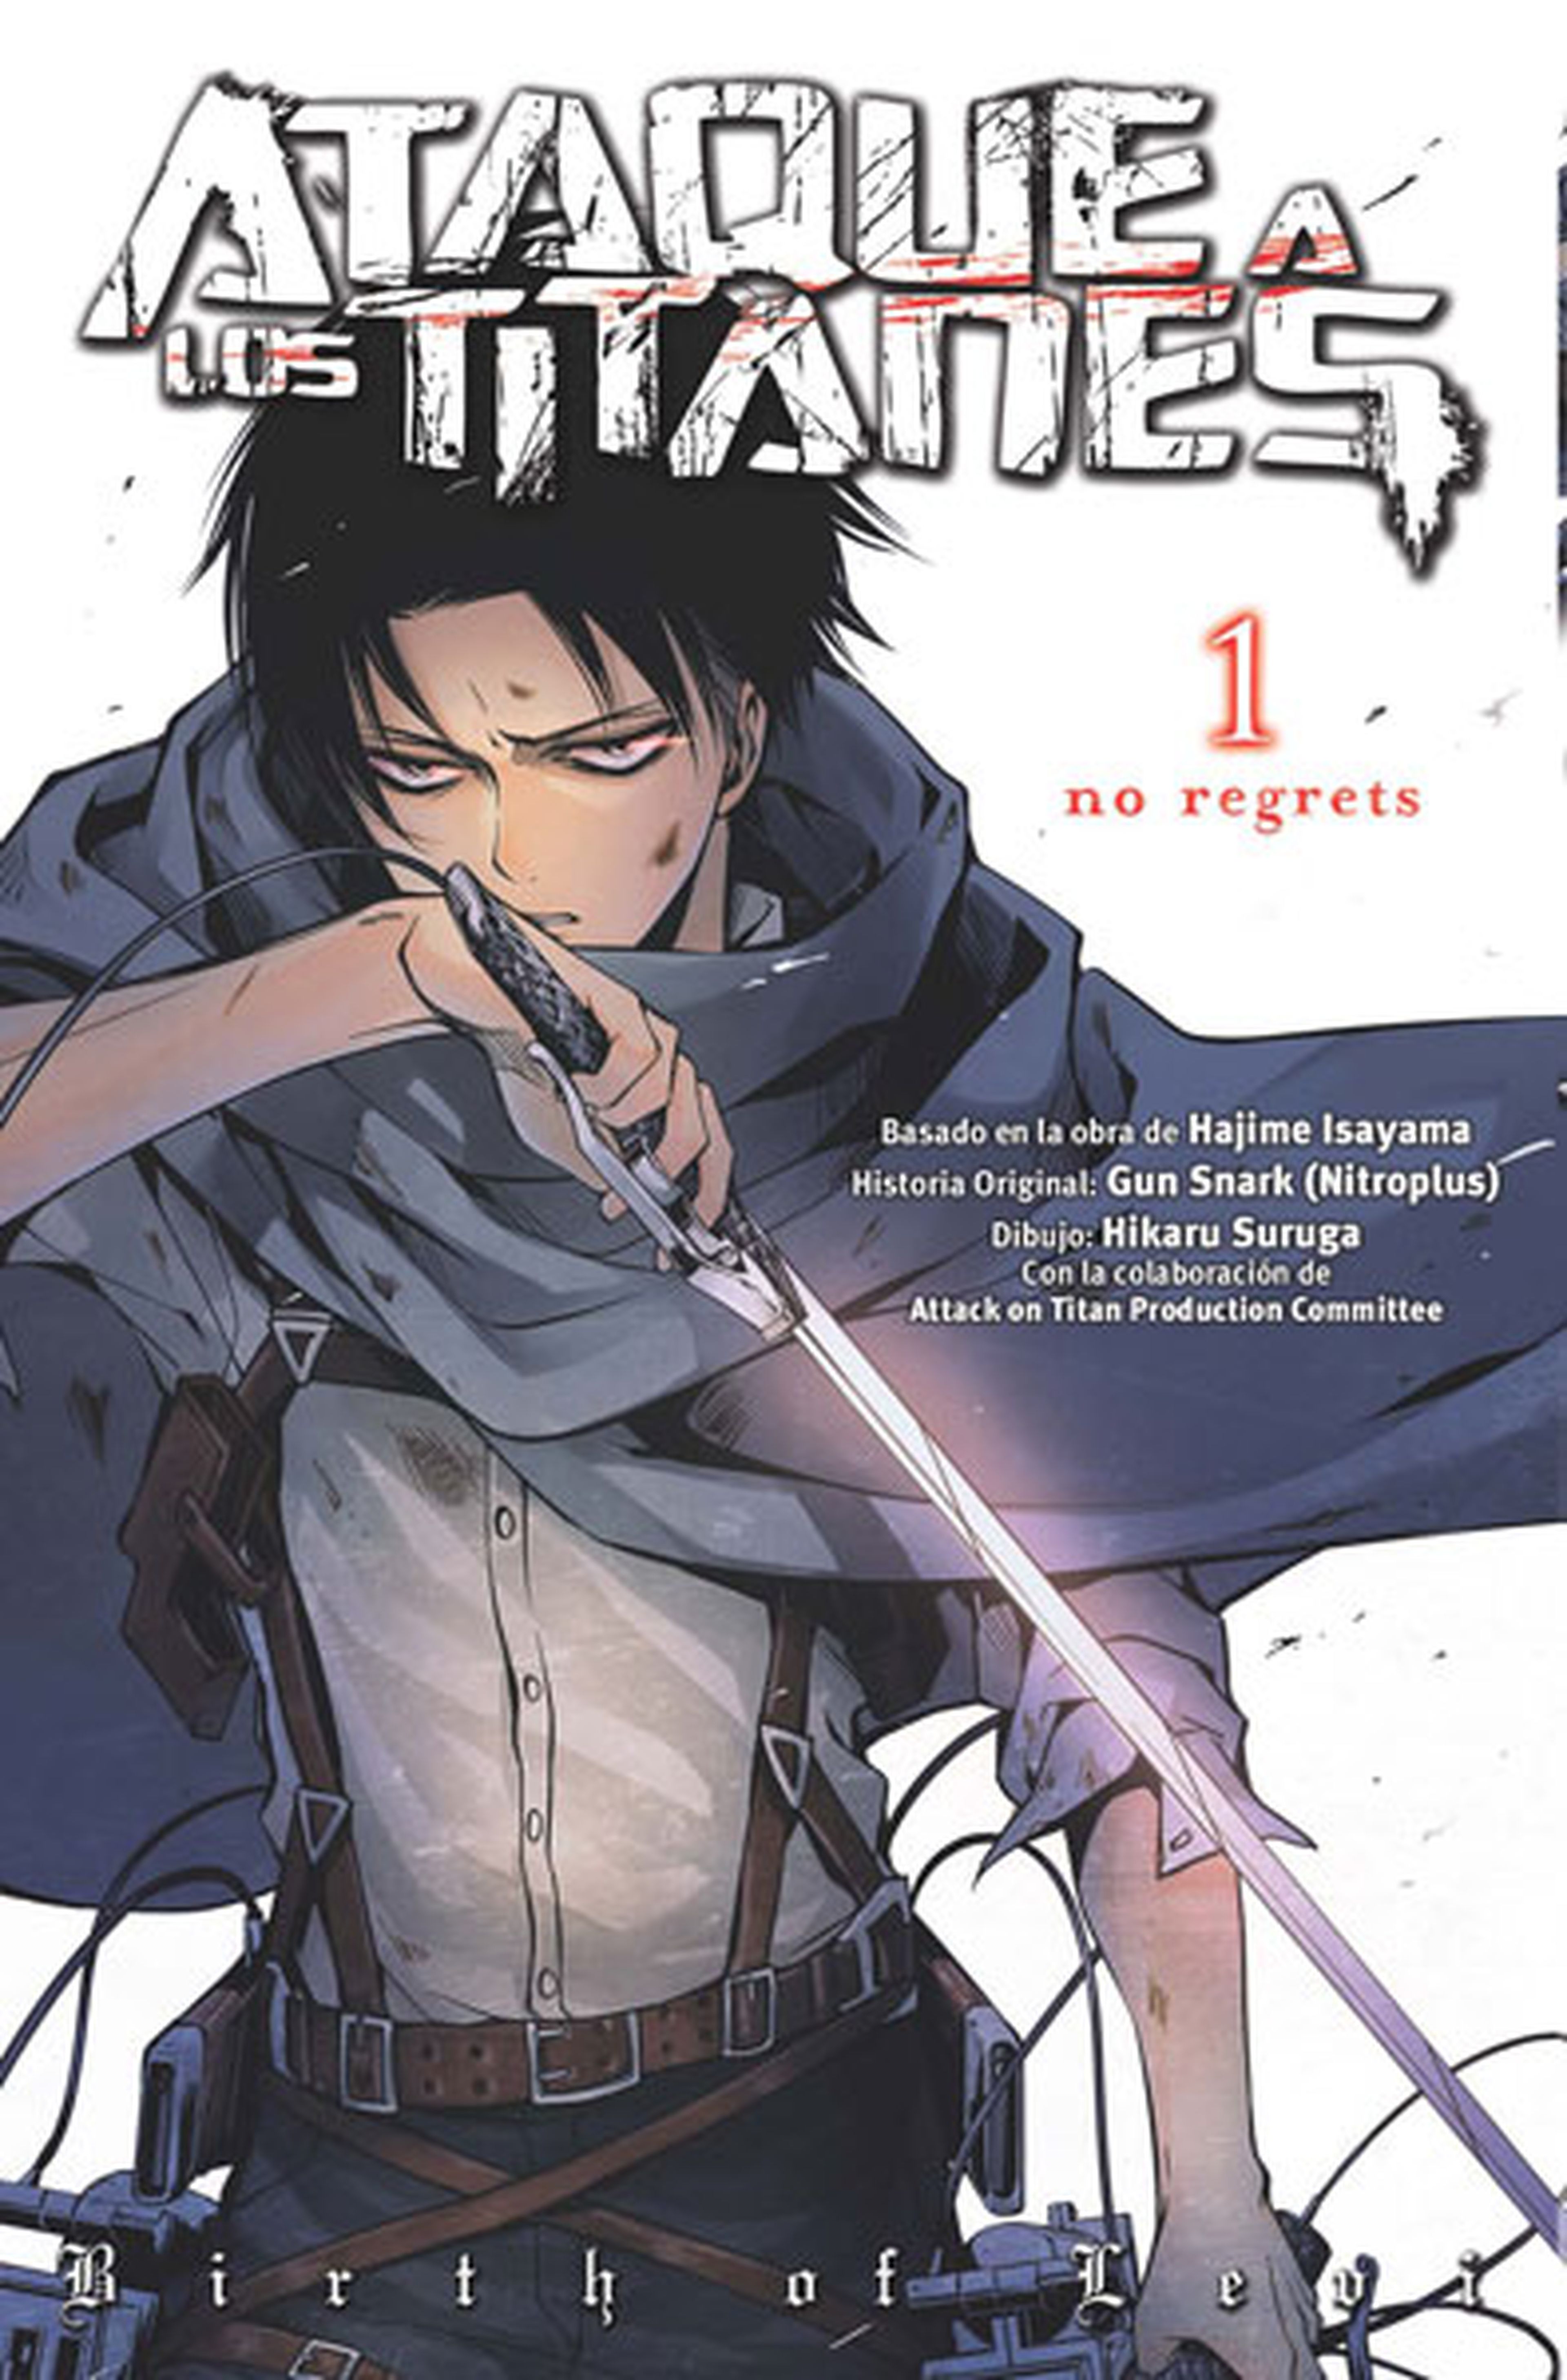 Manga: Novedades de octubre para el Salón del Manga